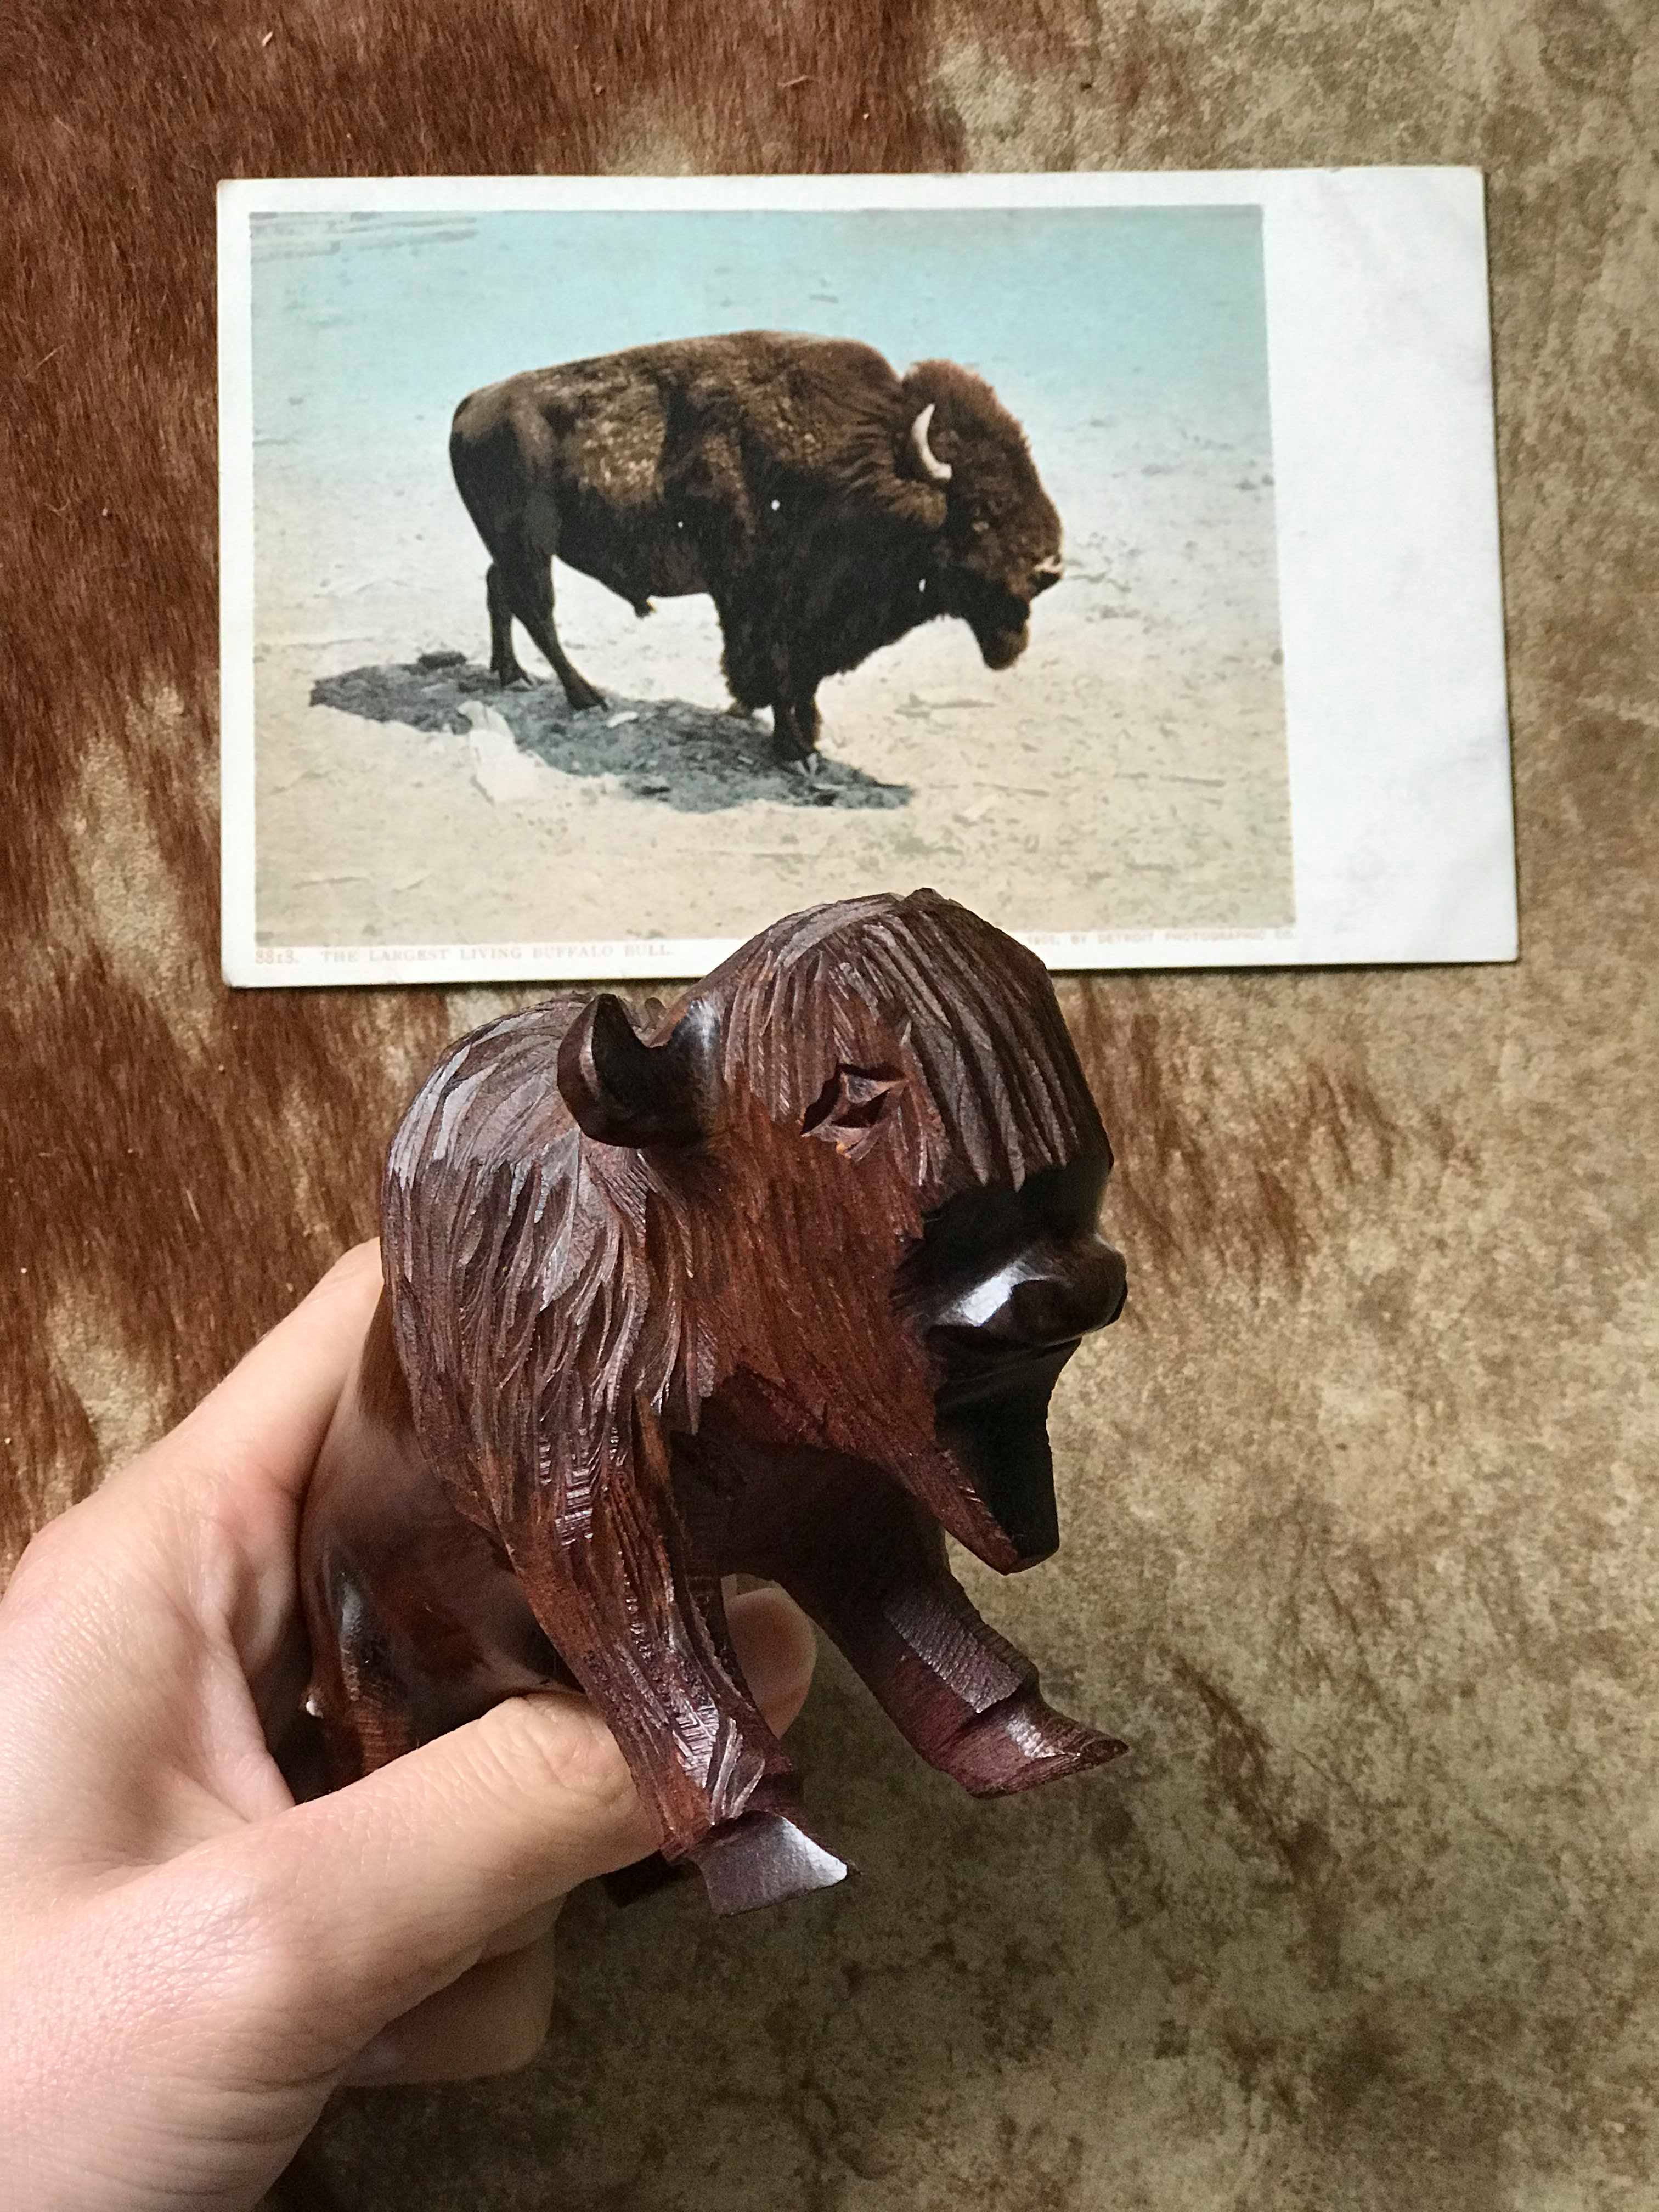 Hand Carved Ironwood Buffalo